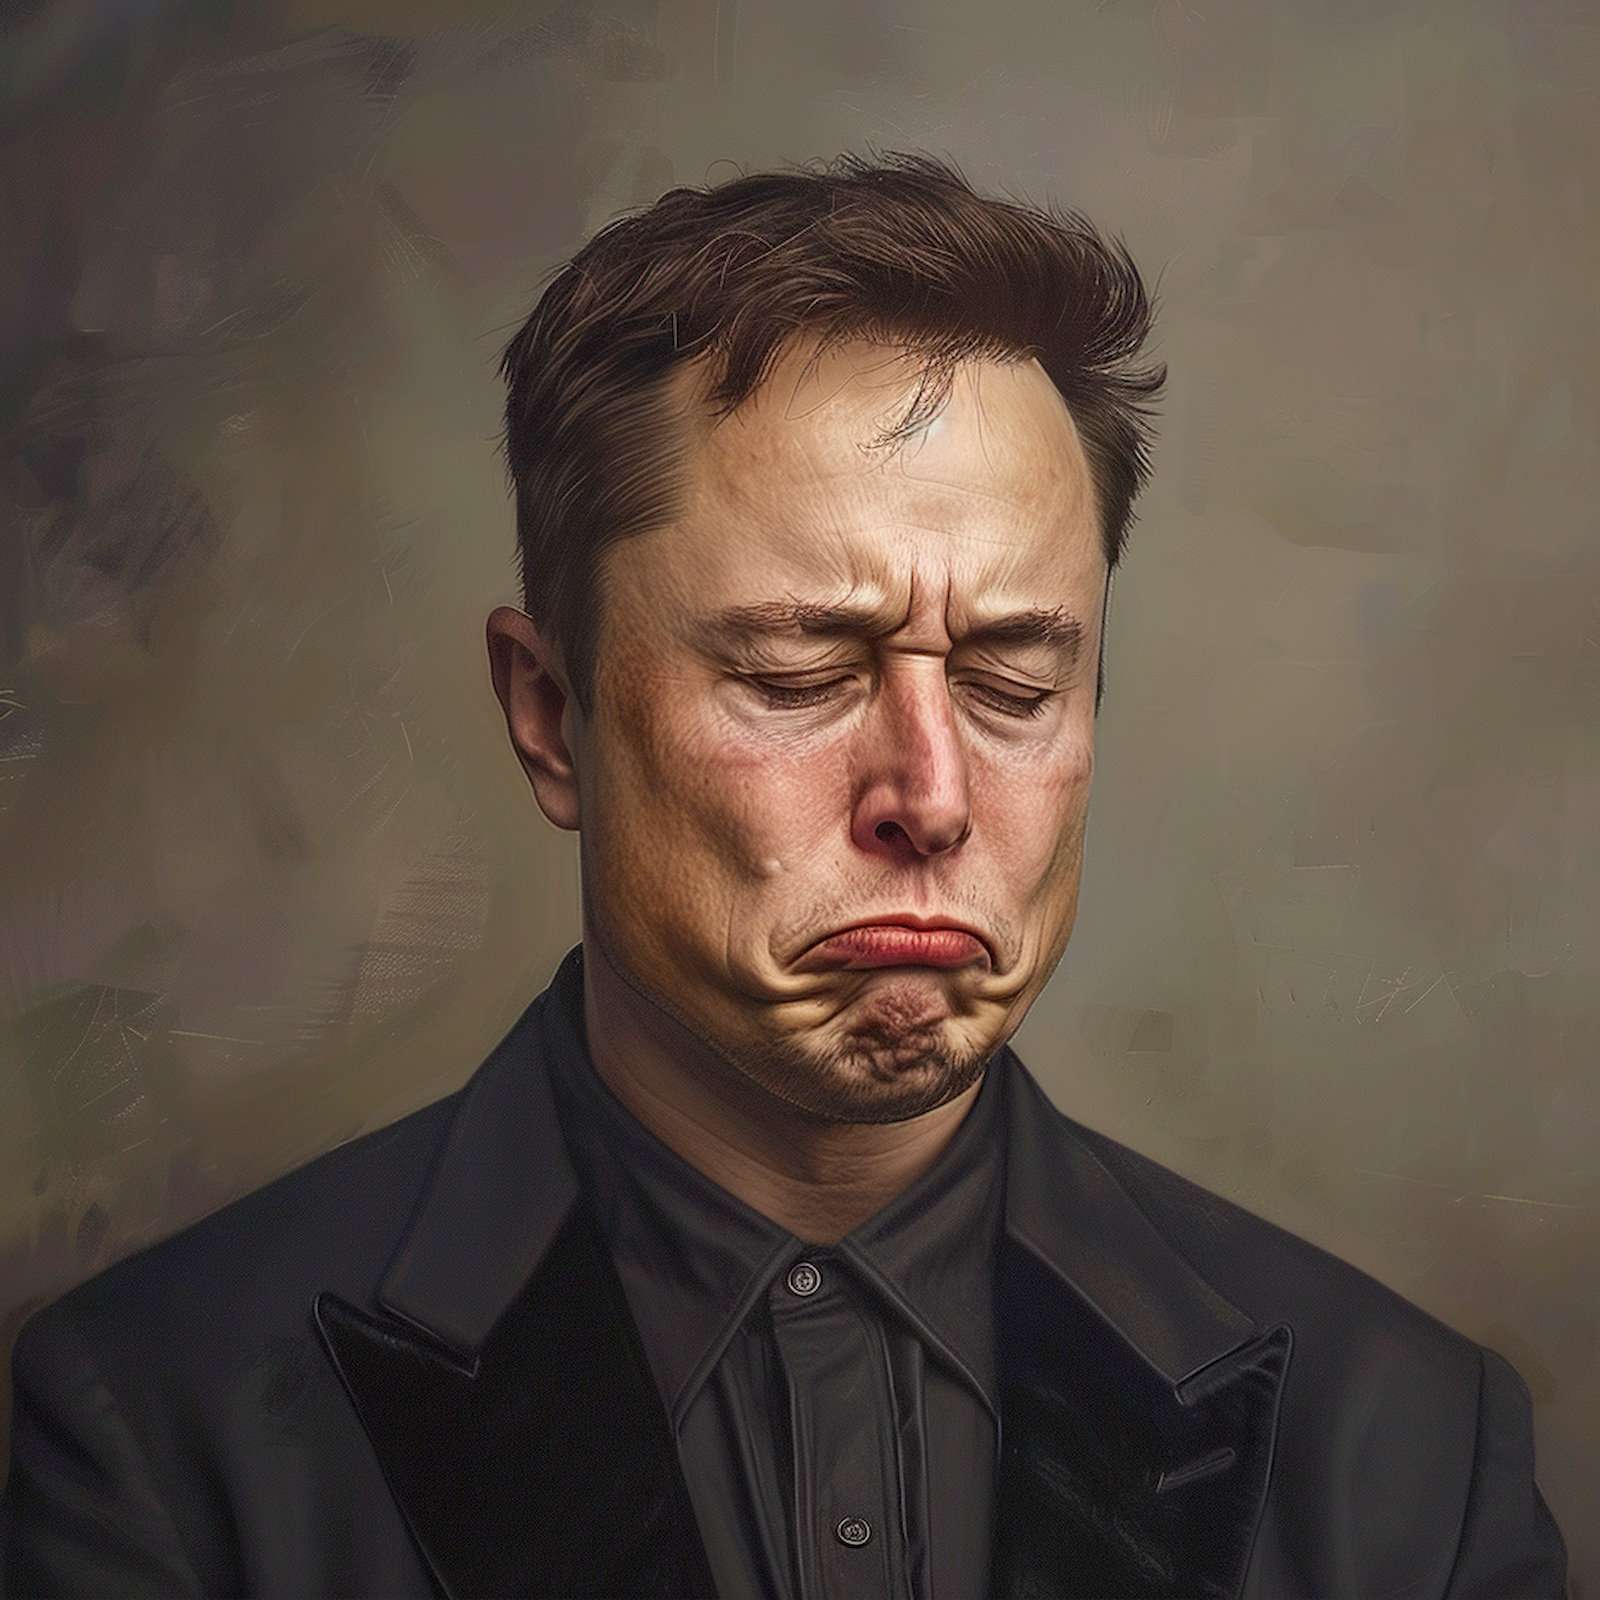 Regarder la vidéo Elon Musk critique vertement ChatGPT et l’accuse de vouloir détruire l’humanité !